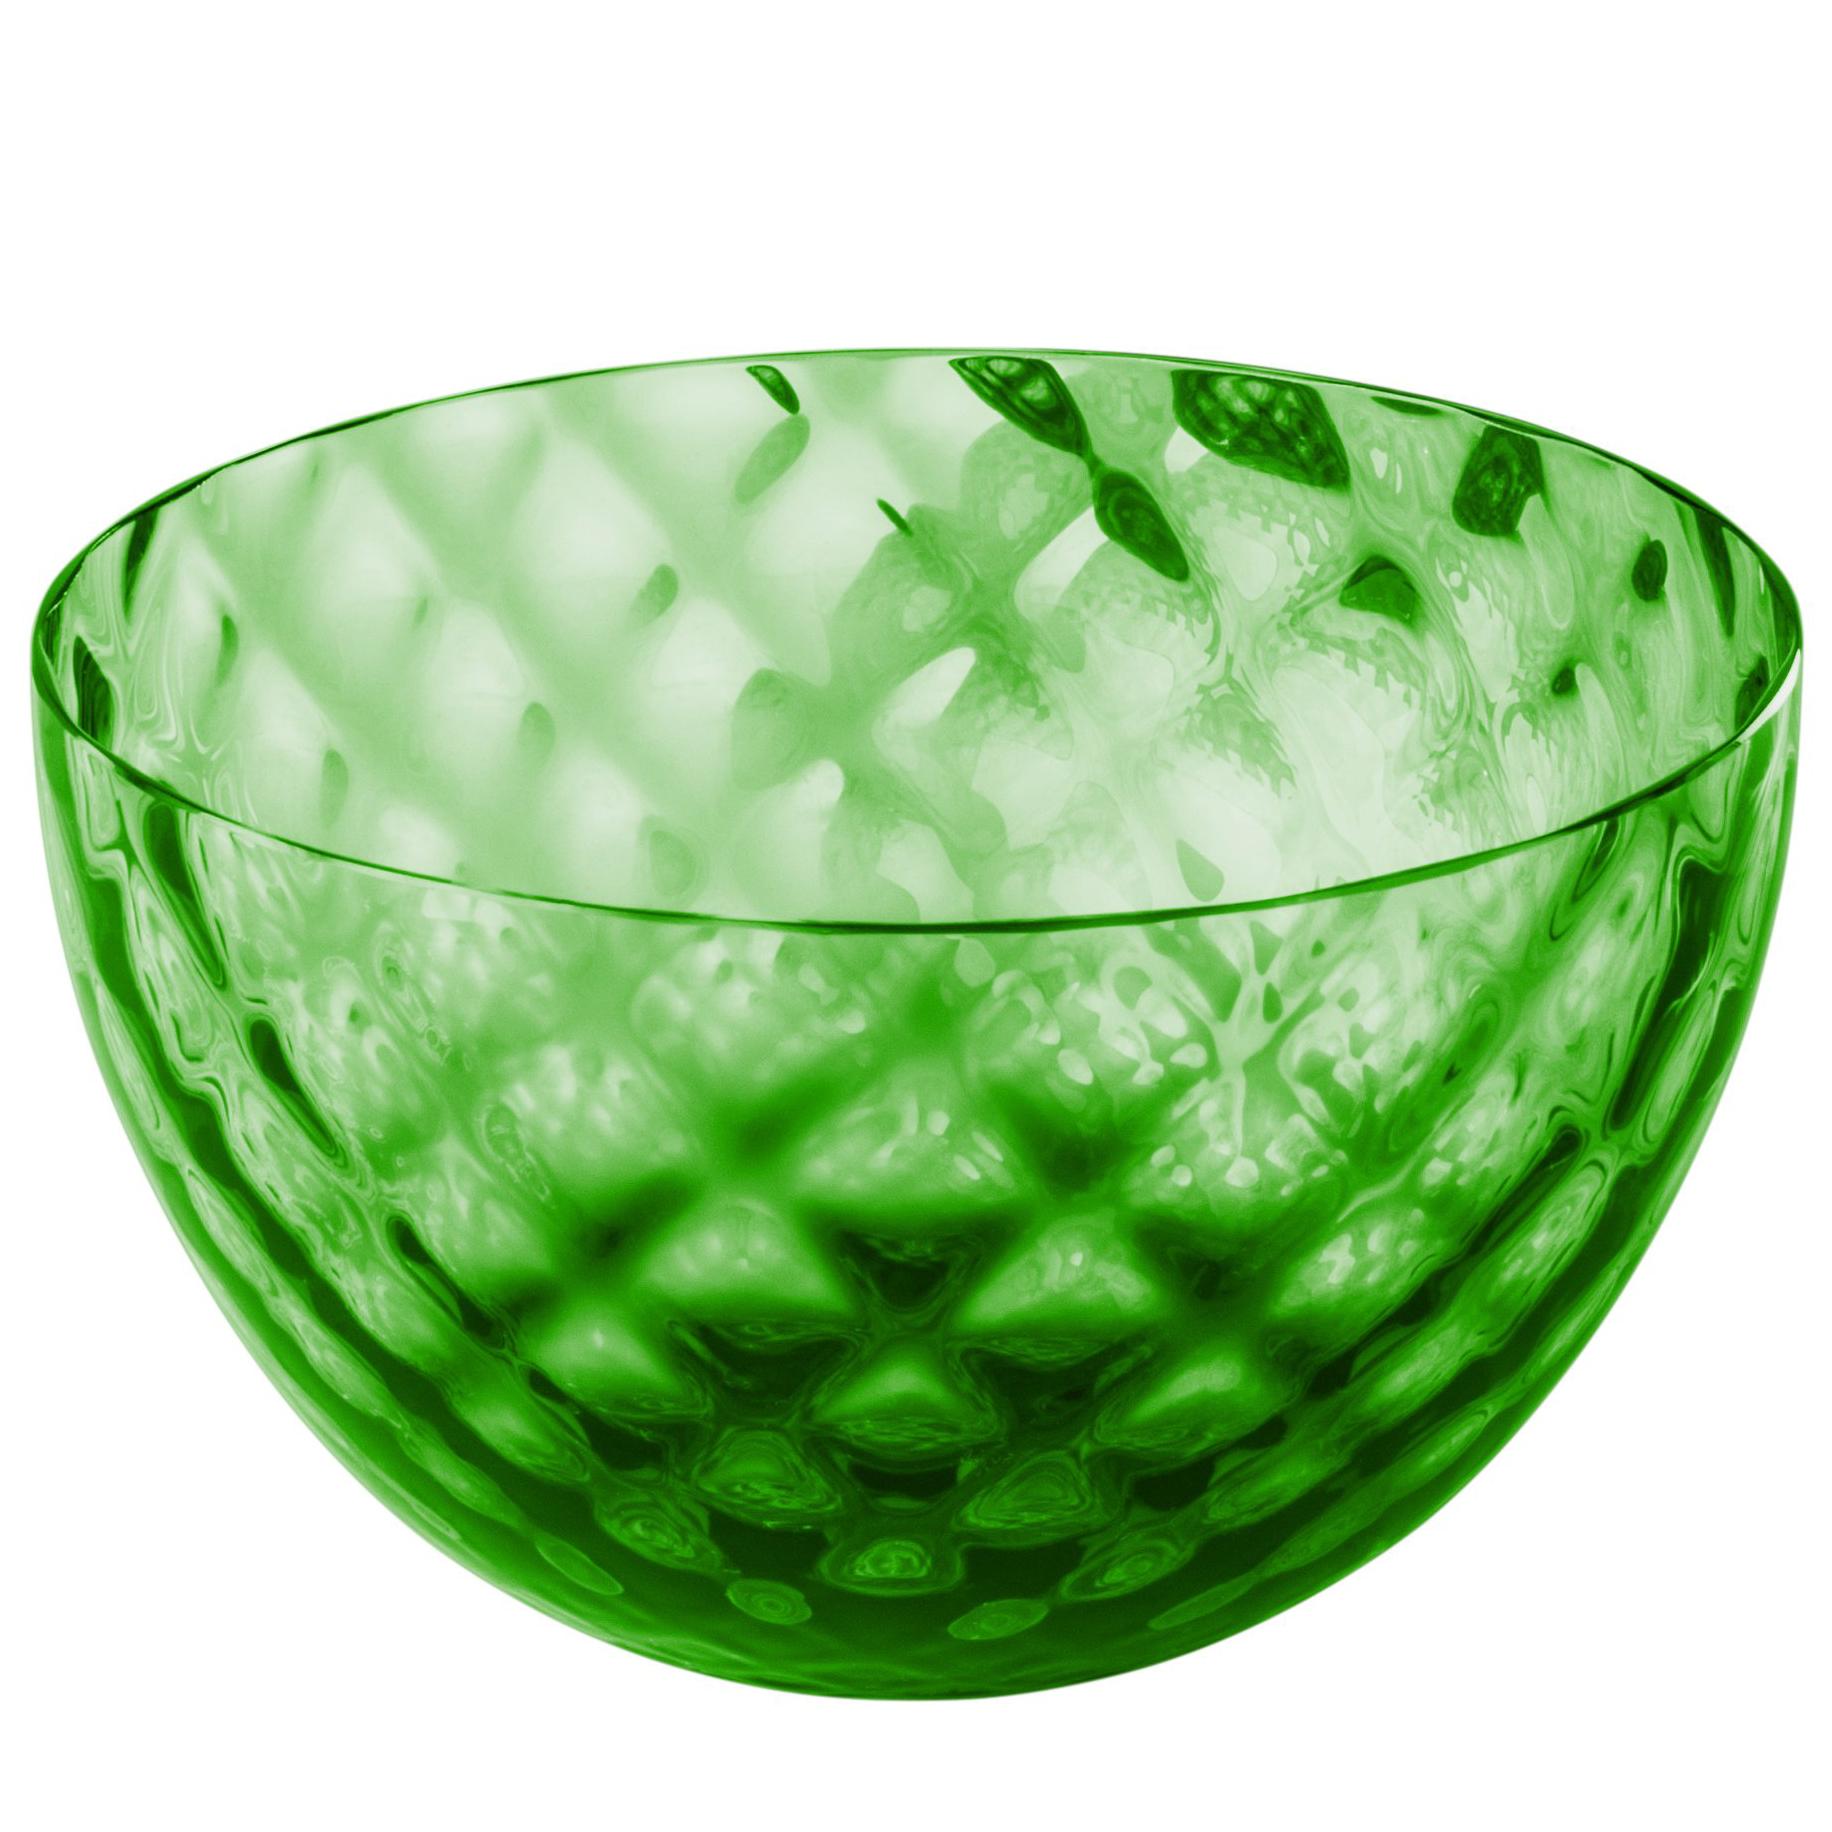 Coppetta Carnevale Glass Bowl in Green by Venini